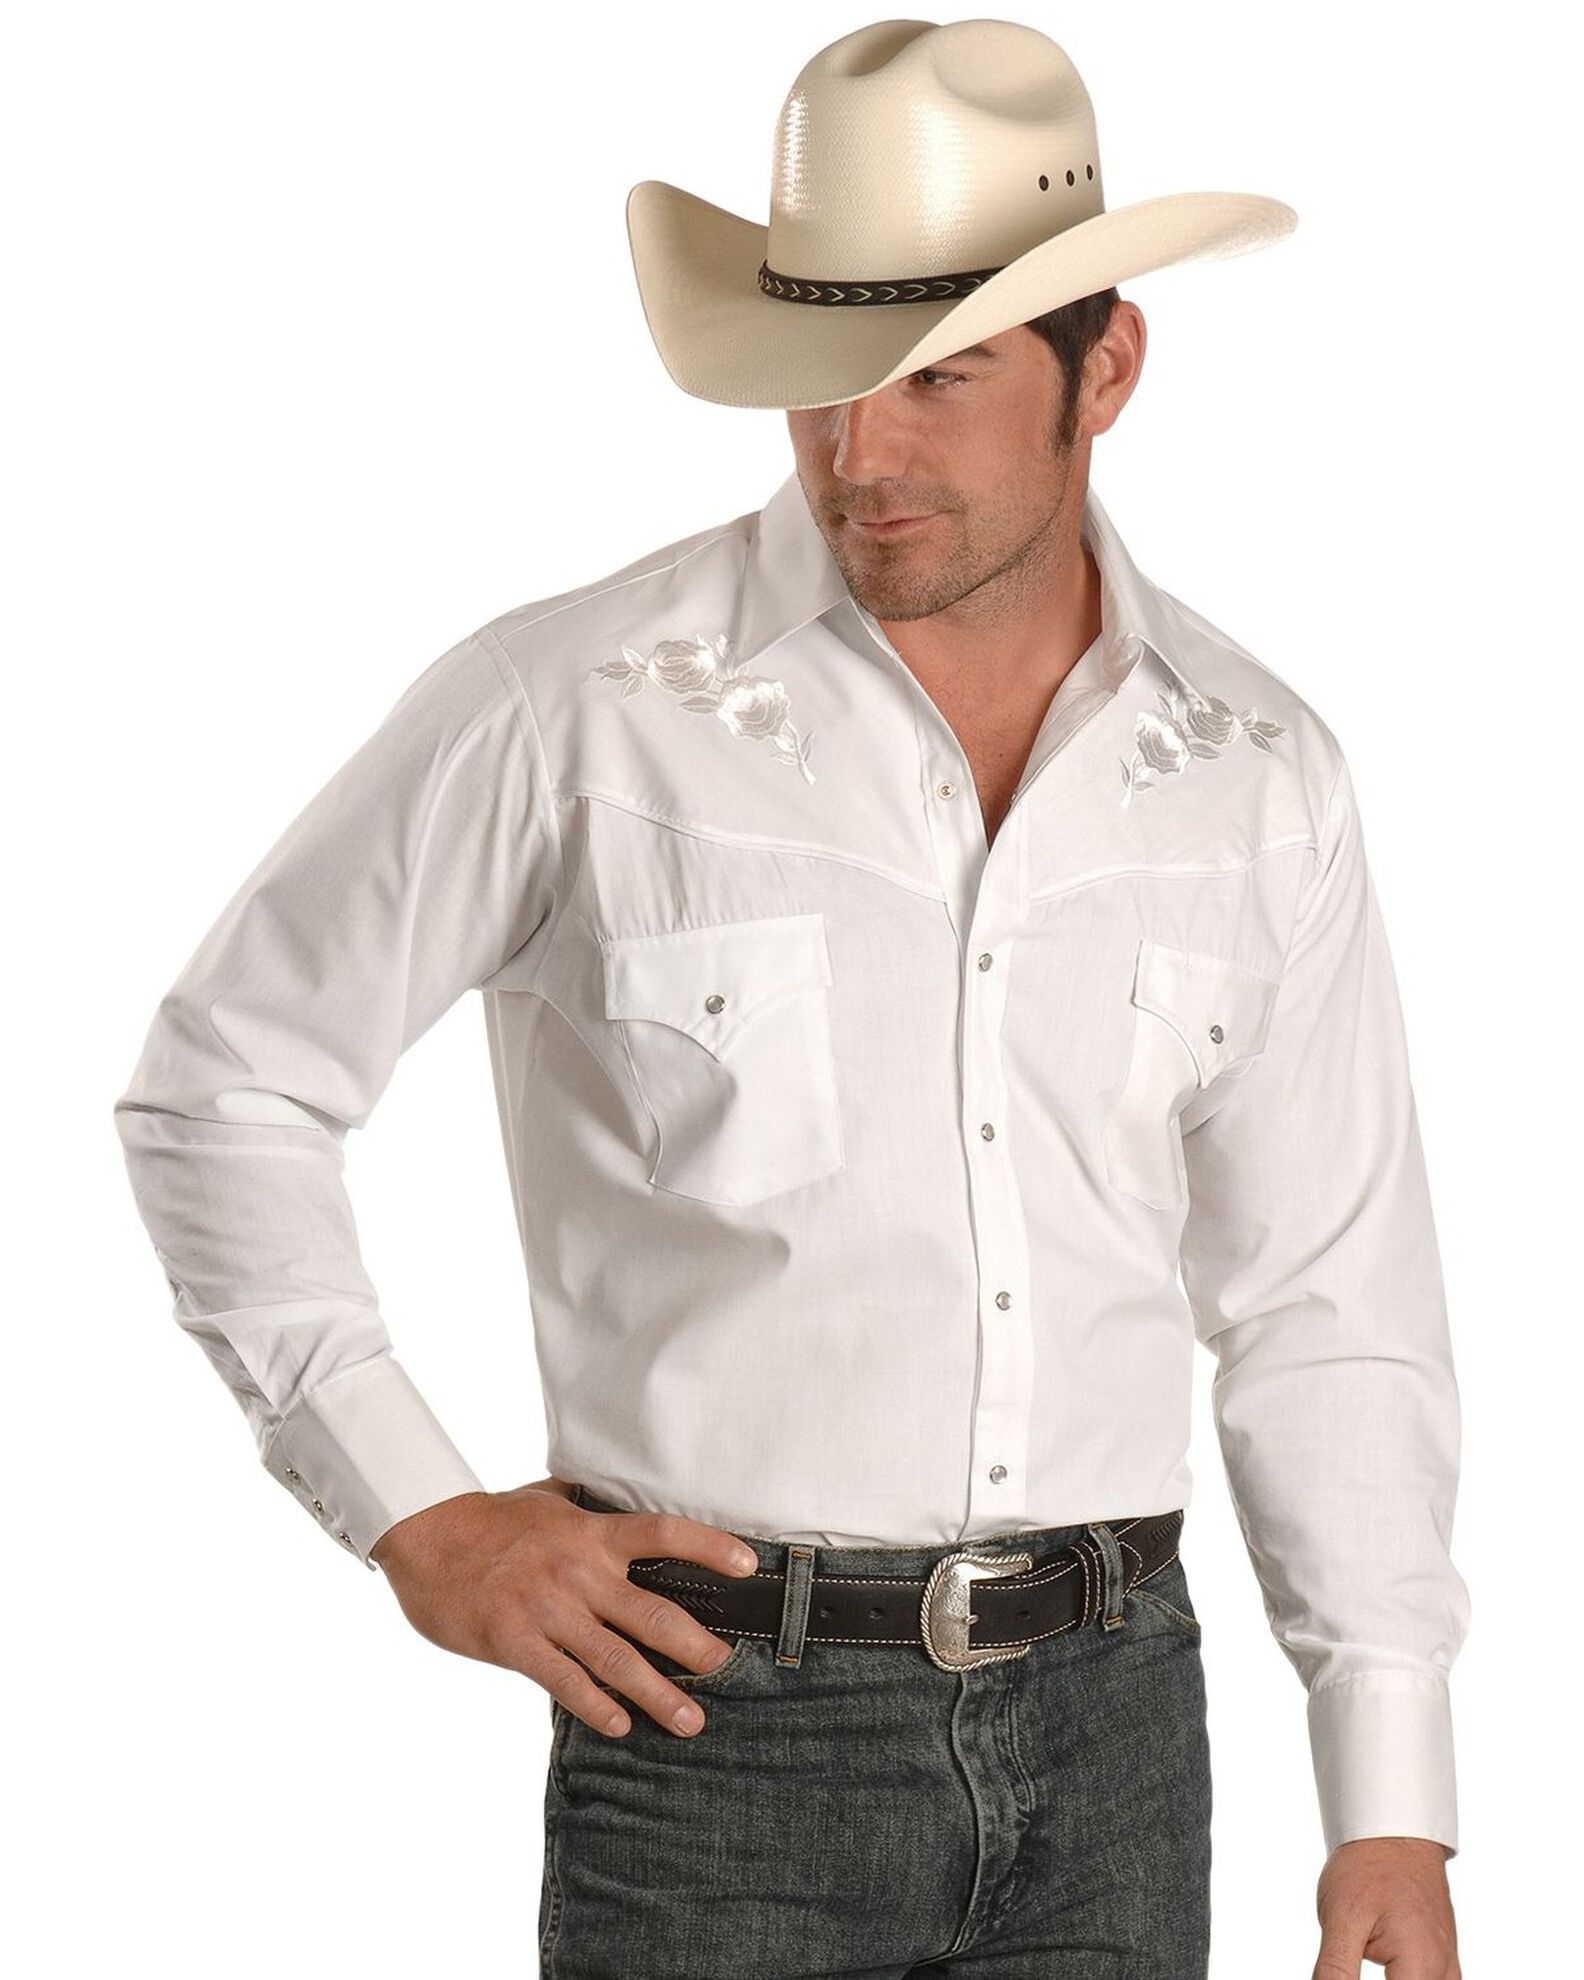 adviicd Men's Western Cowboy Long Sleeve Pearl Snap Casual Work